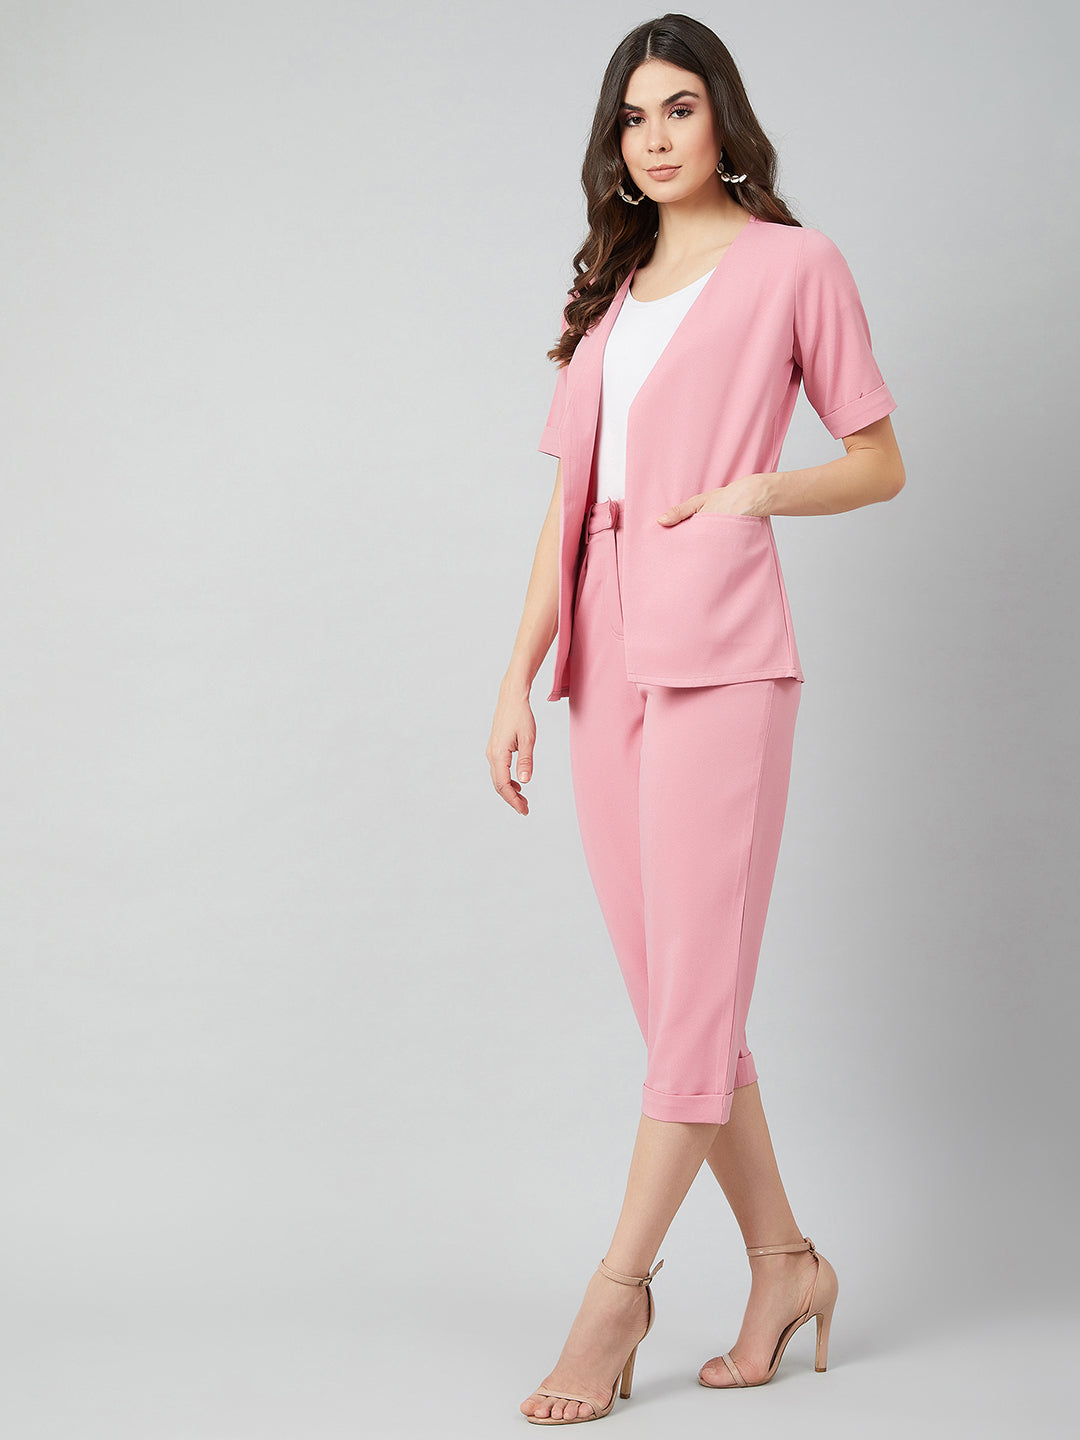 Athena Women Pink Blazer With Cigarette Pant Co-ord Set - Athena Lifestyle